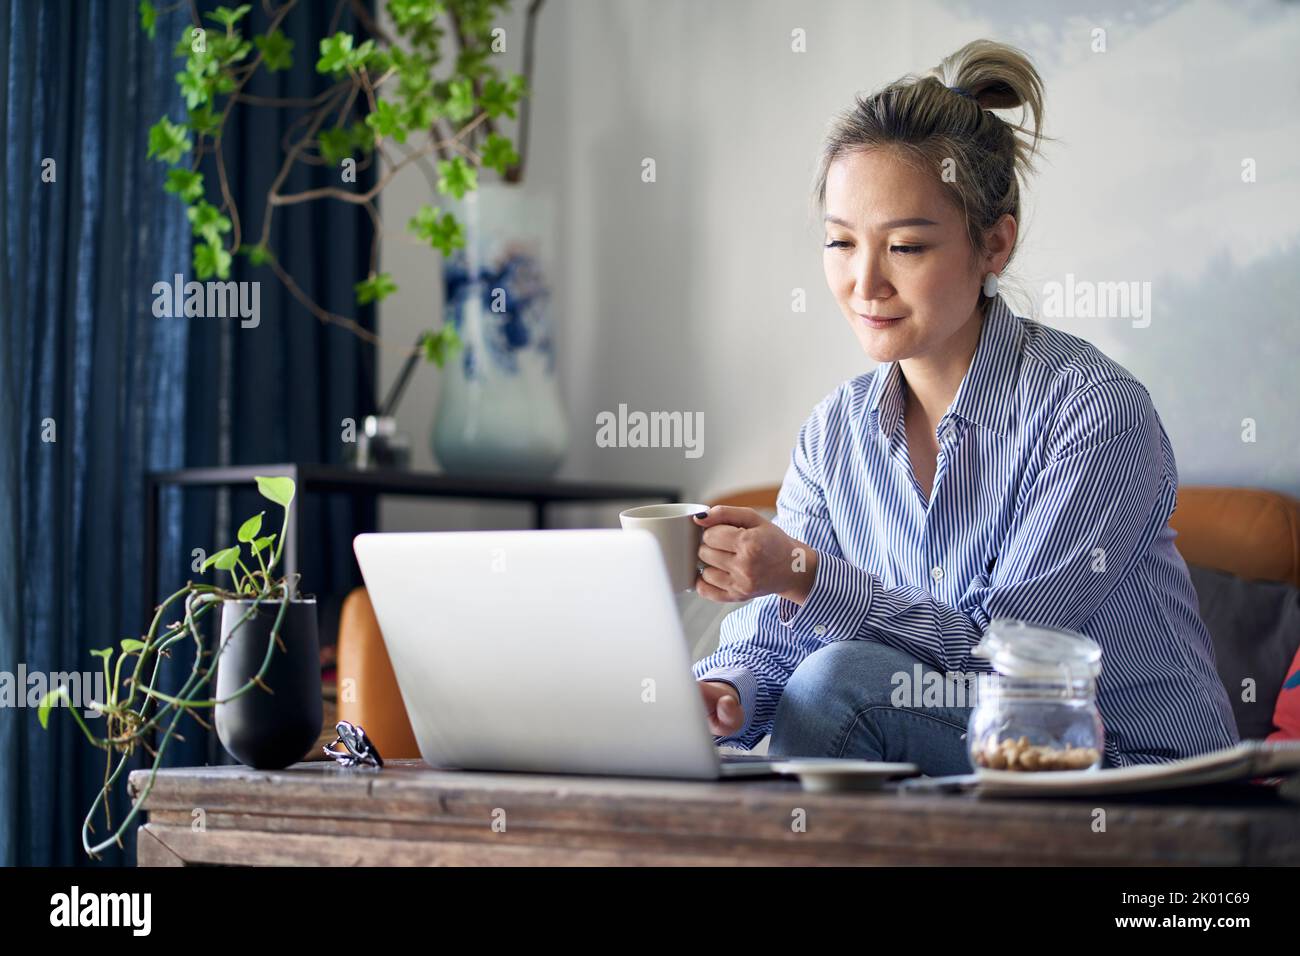 Reife professionelle asiatische Frau, die von zu Hause aus auf der Couch sitzt und Kaffee trinkt, während sie auf einen Laptop schaut Stockfoto